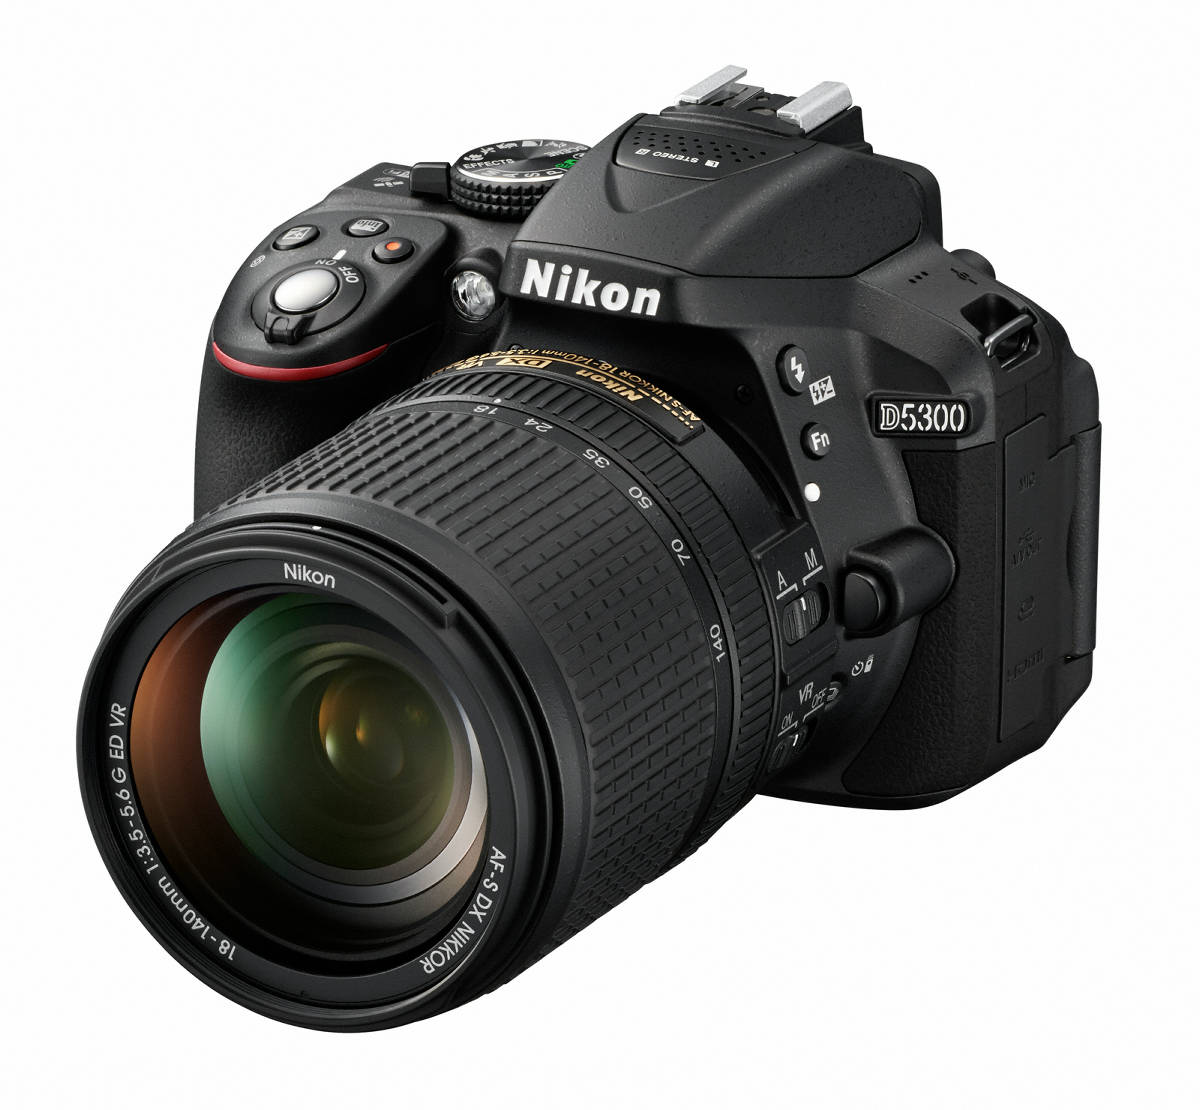 ニコン初のWi-Fi・GPS対応デジタル一眼レフカメラ「D5300」が11月中旬発売 - GIGAZINE